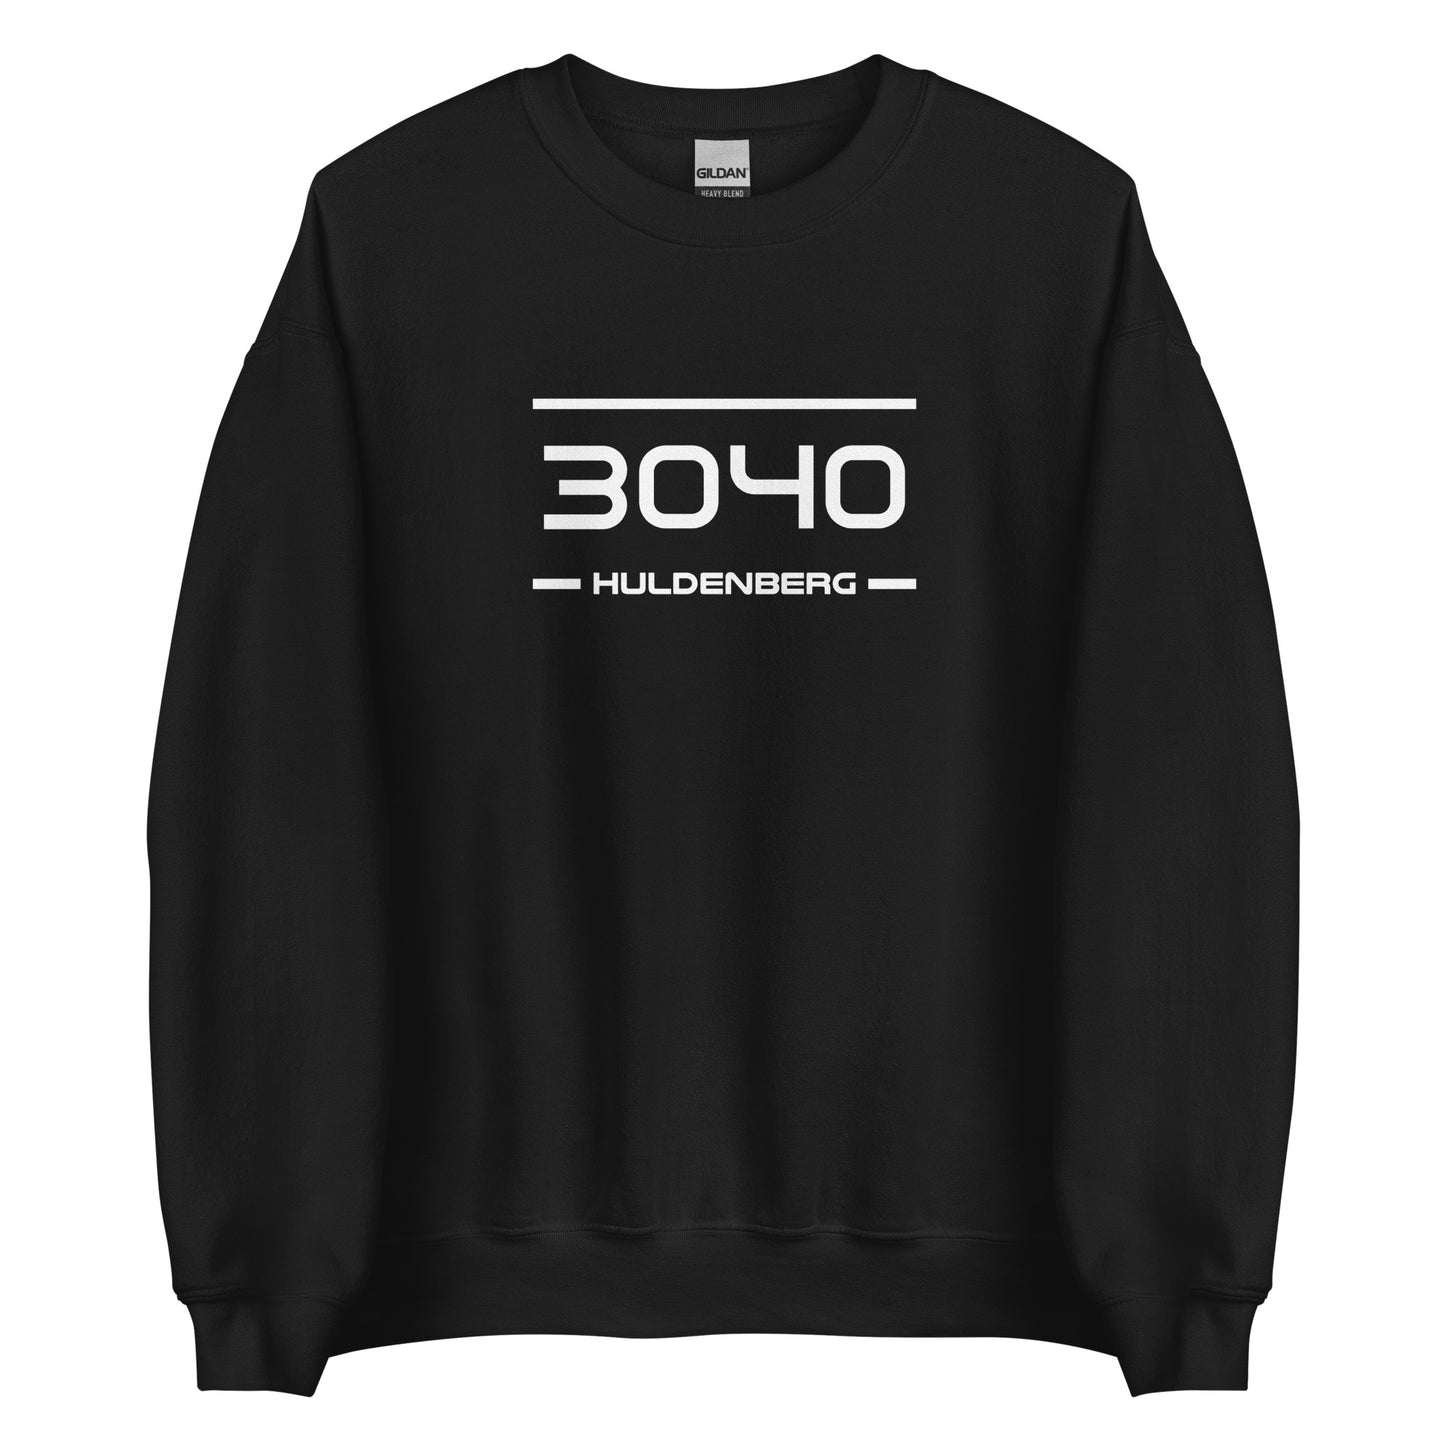 Sweater - 3040 - Huldenberg (M/V)